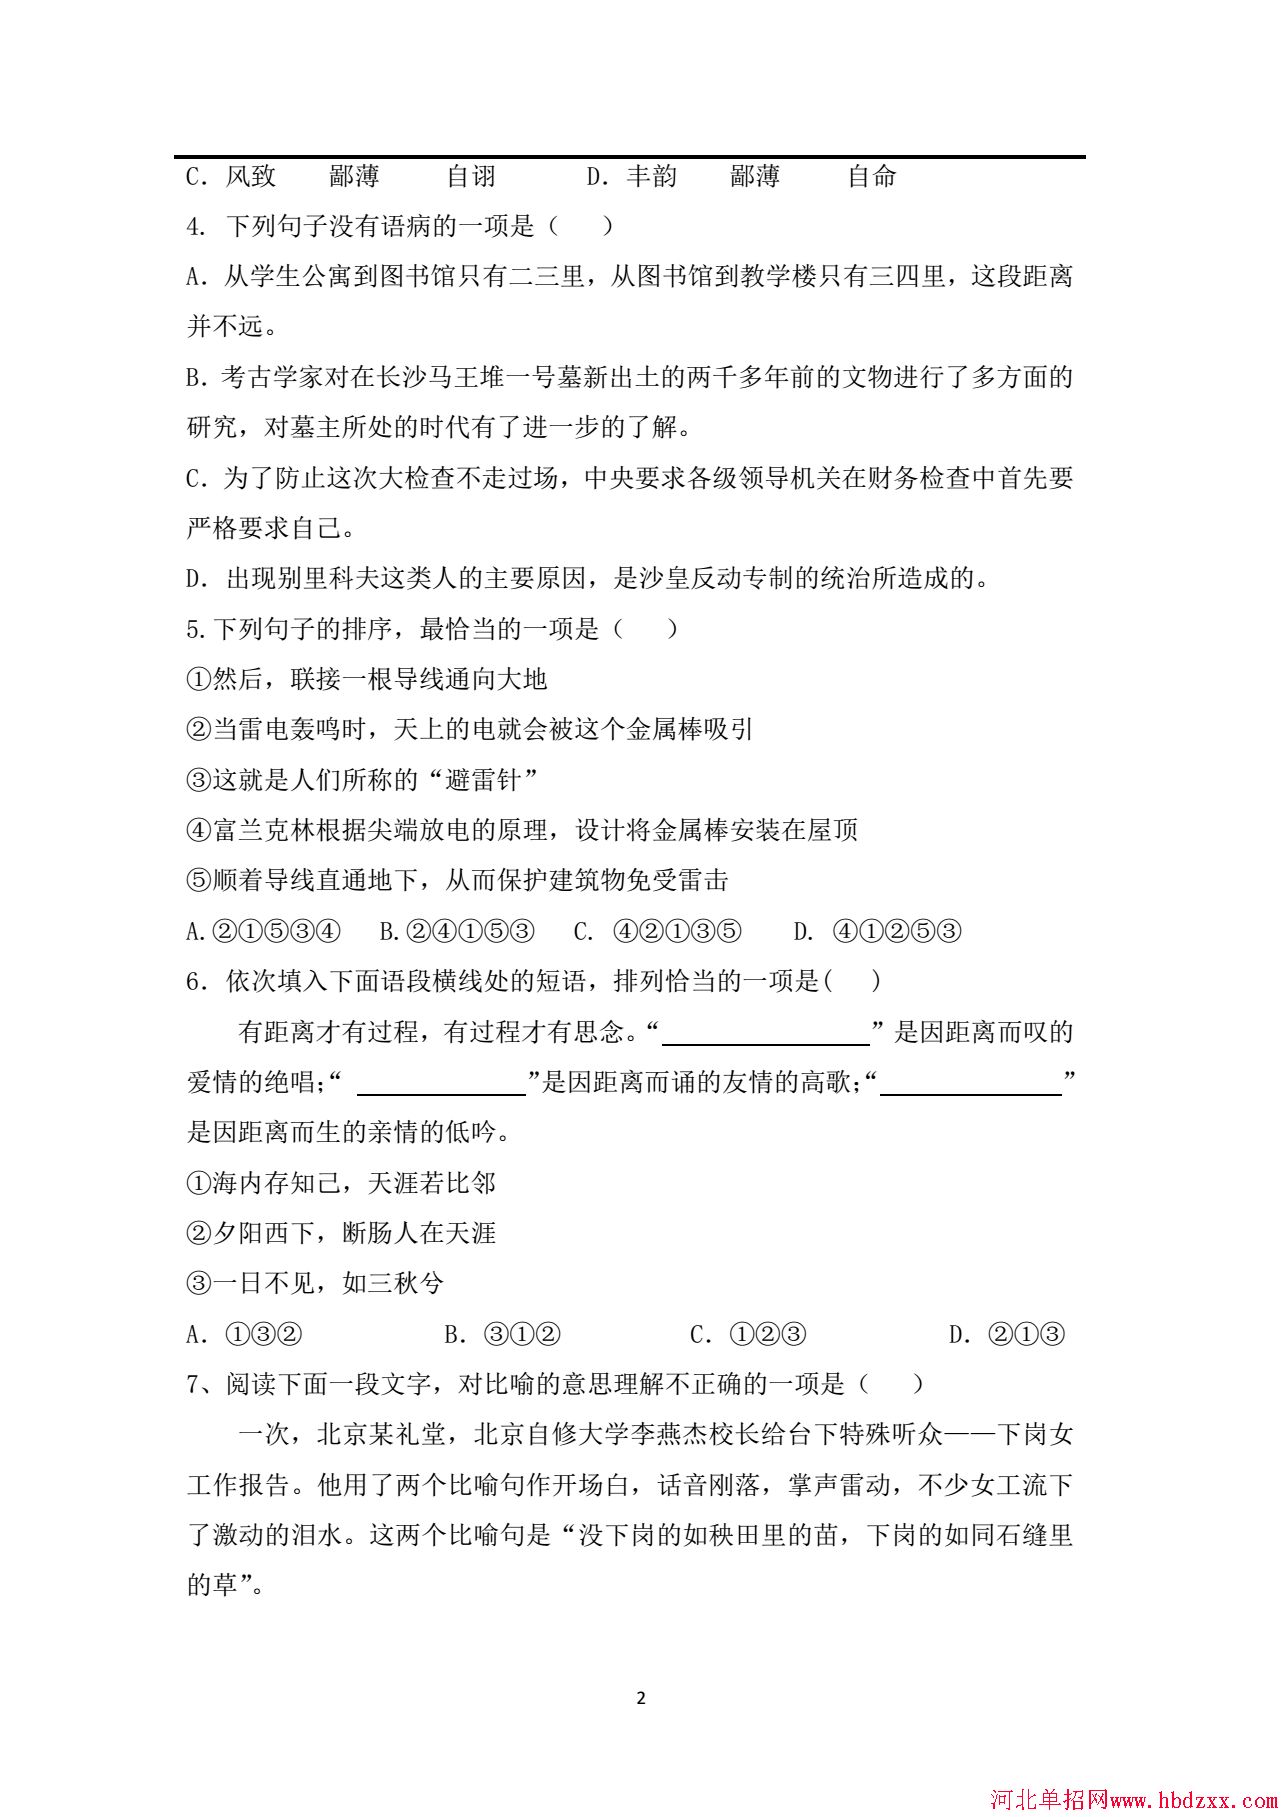 河北机电职业技术学院2014年单招学问课考试试卷 图2